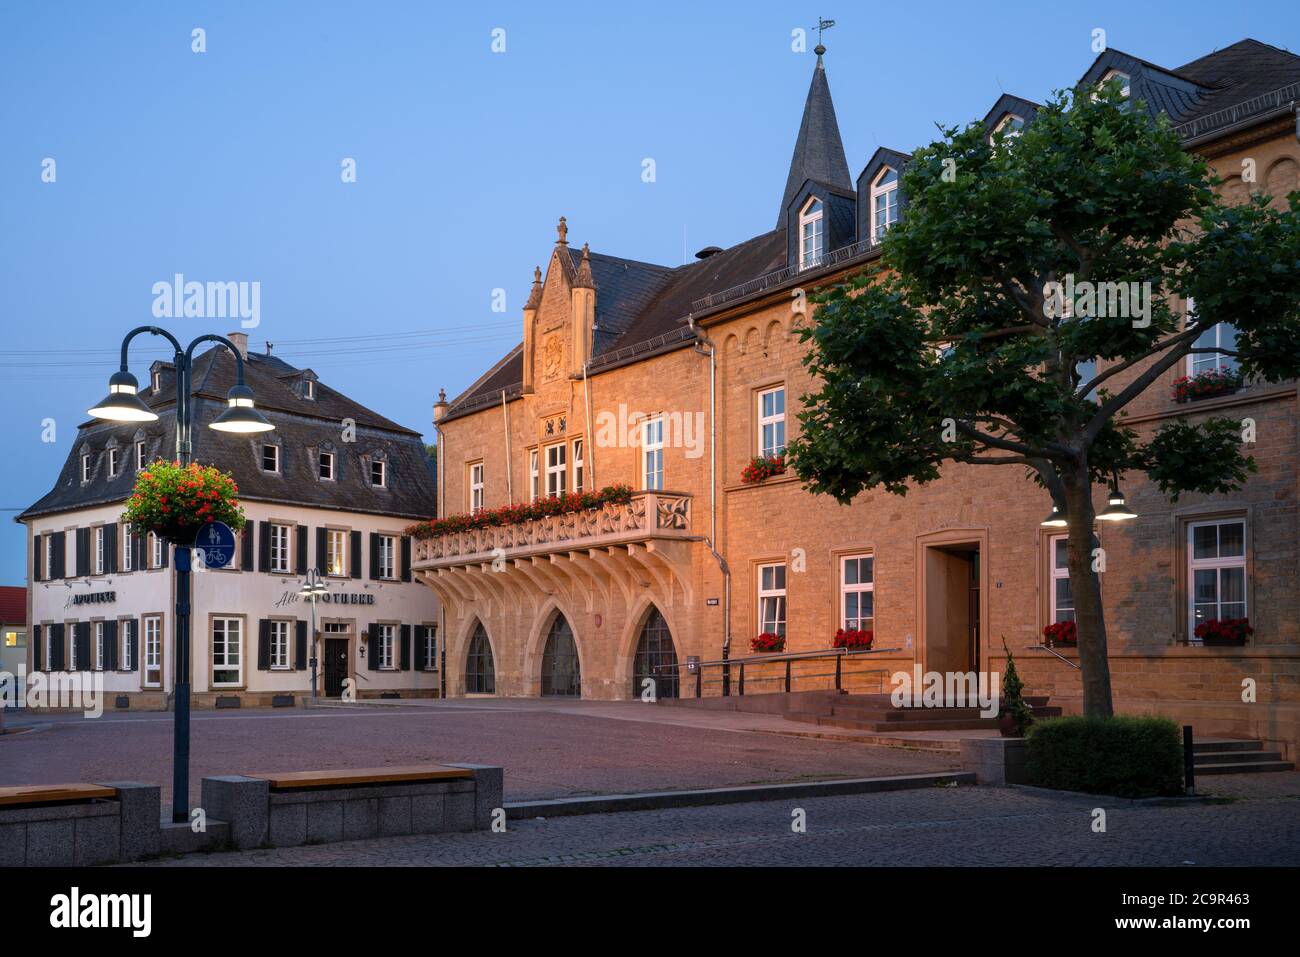 BAD SOBERNHEIM, ALLEMAGNE - 25 JUIN 2020 : image panoramique de la place du marché de Bad Sobernheim avec mairie et ancienne pharmacie à l'heure bleue le 25 juin Banque D'Images